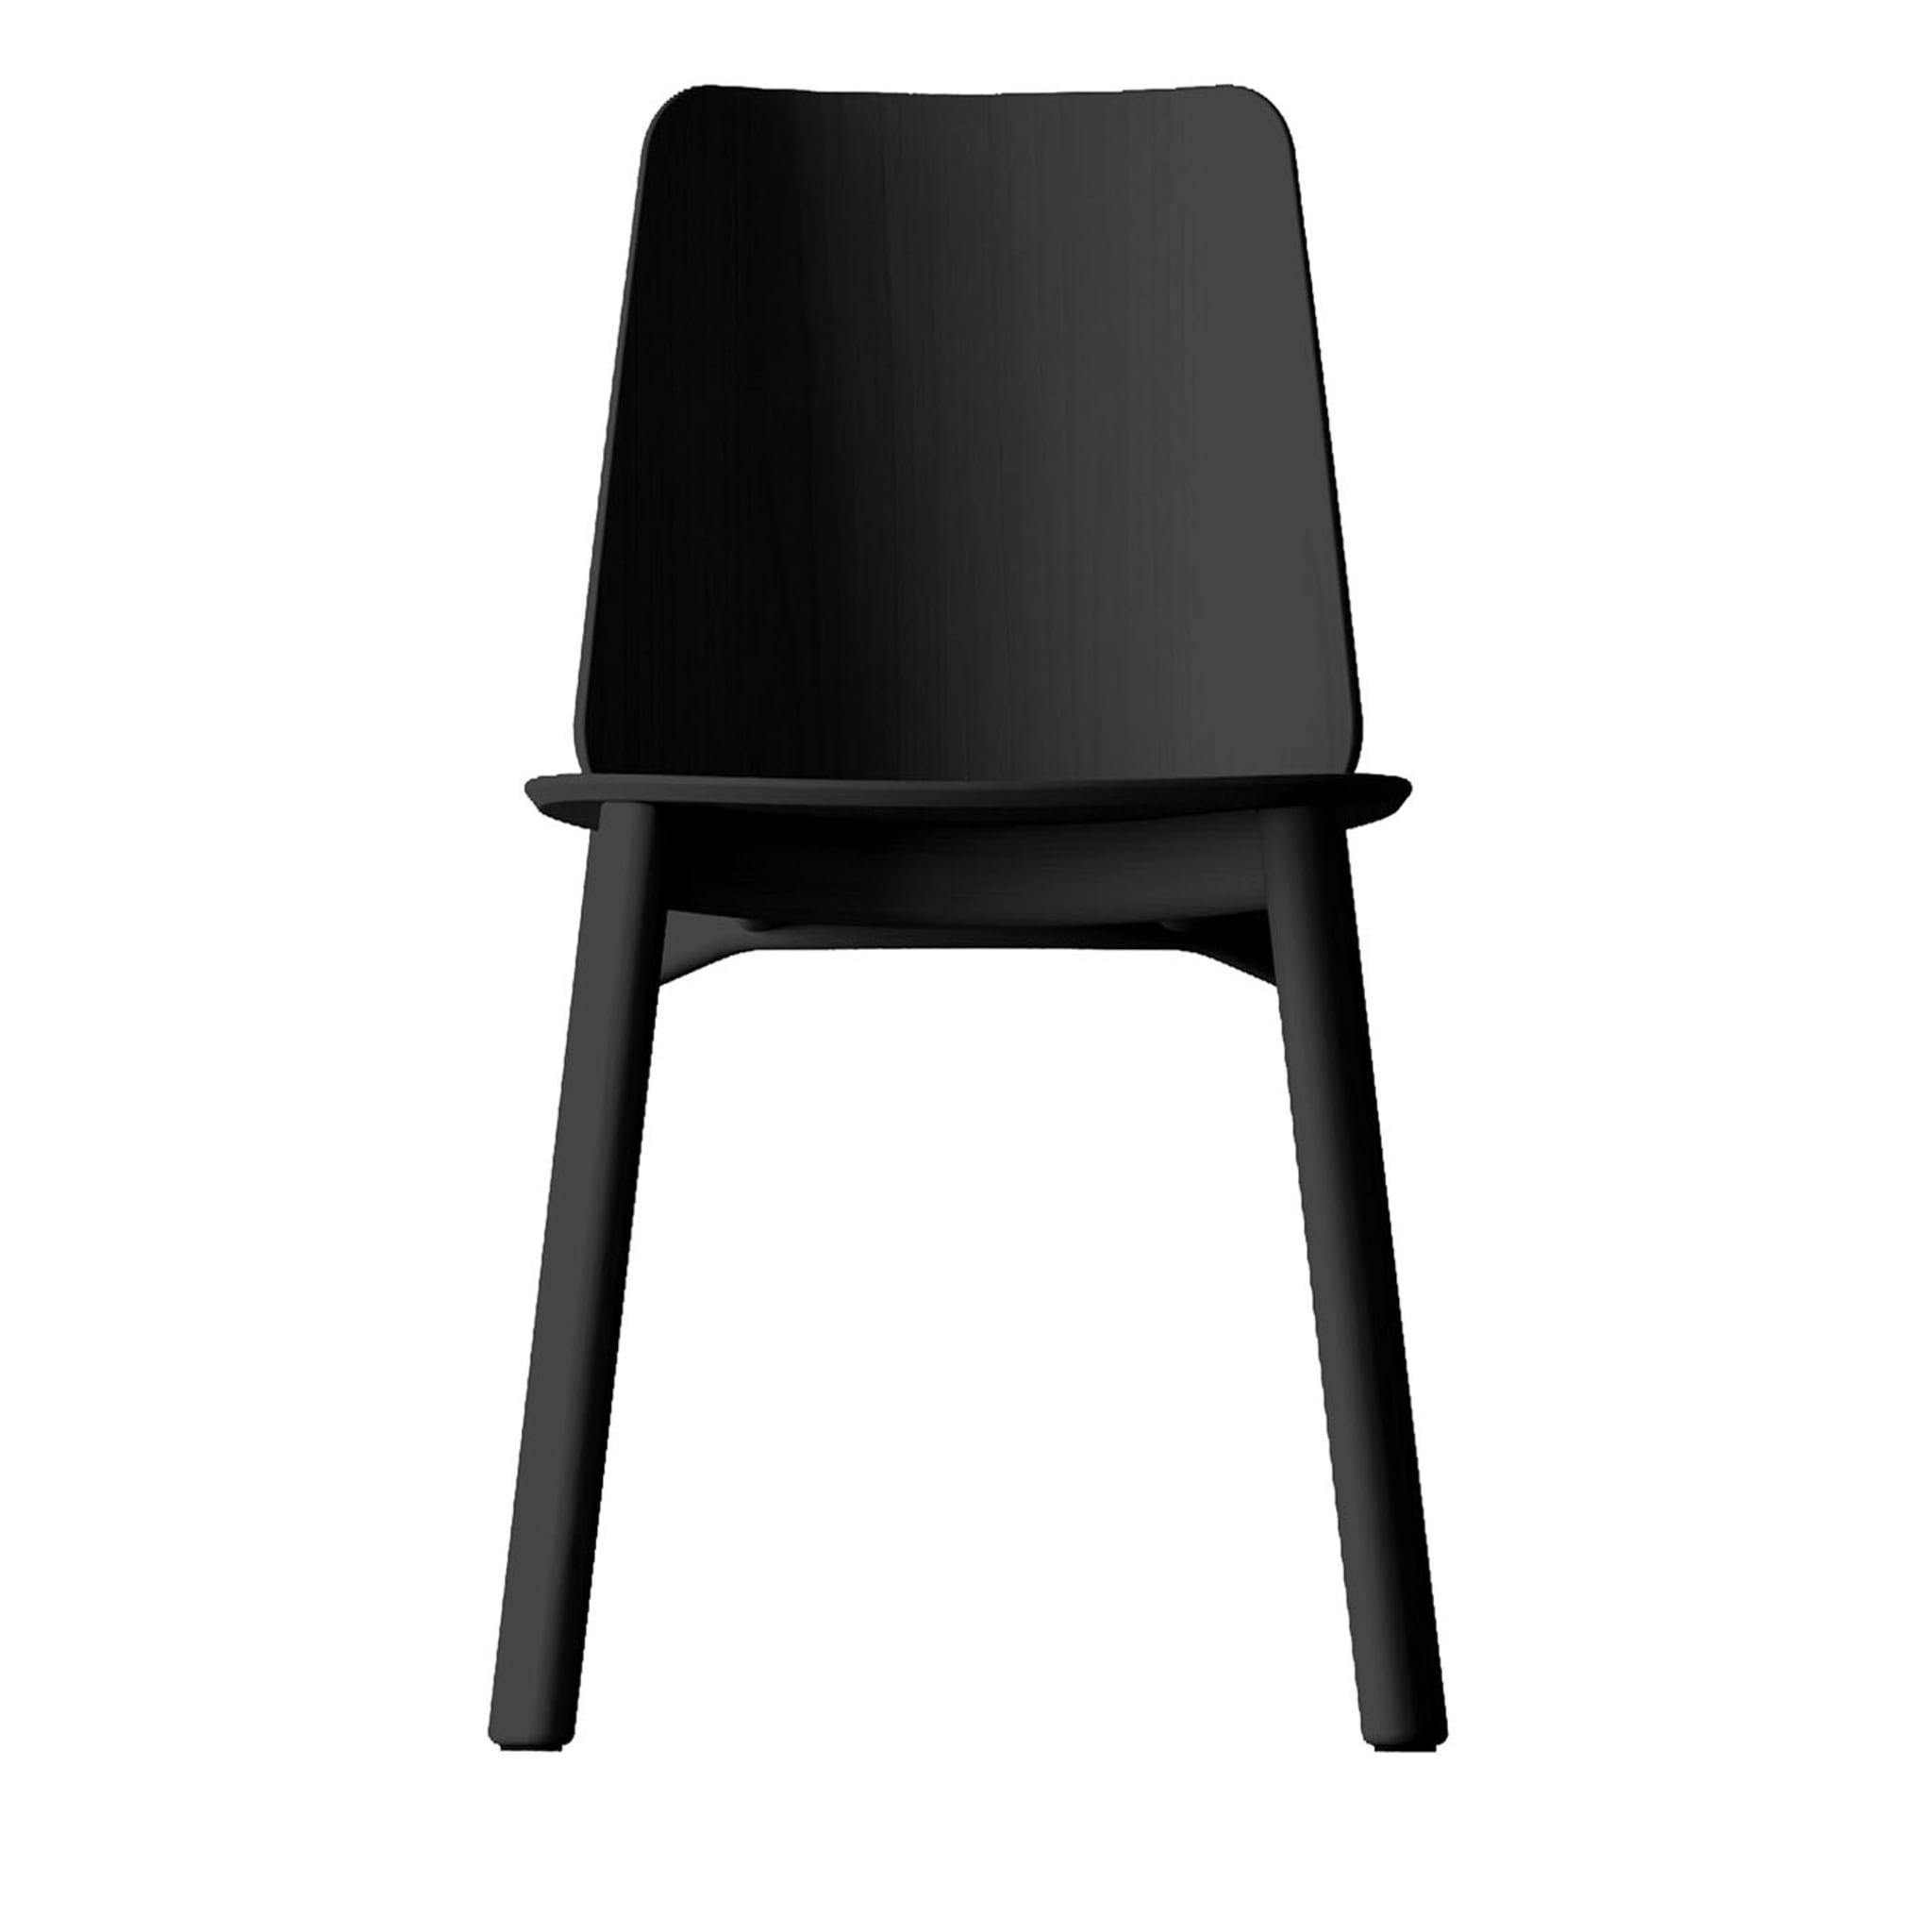 Billa Black Chair by Claudio Avetta - Main view